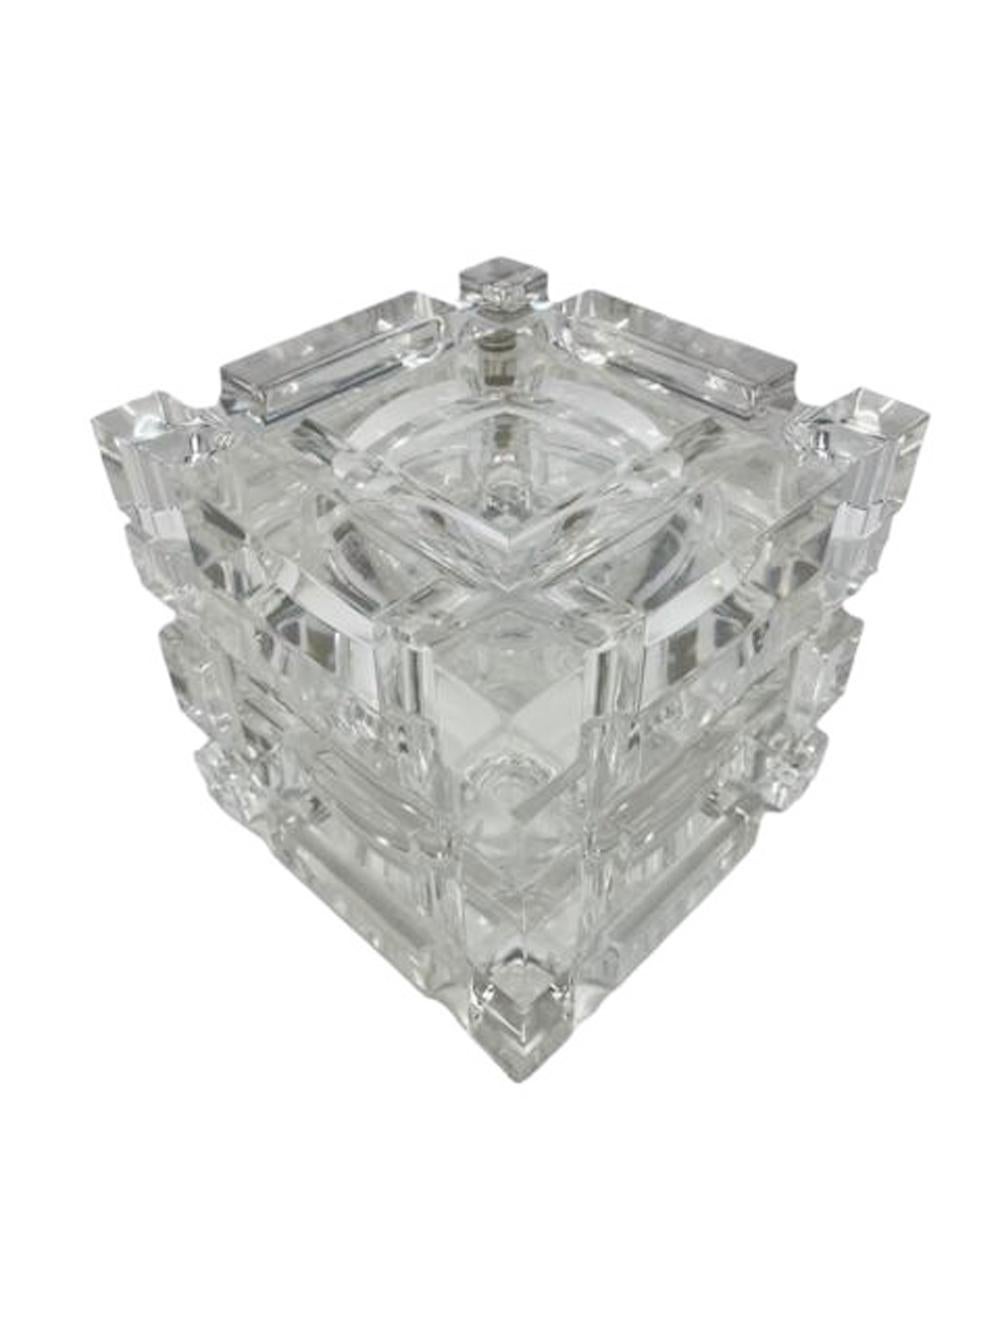 Seau à glace en forme de cube datant du milieu du siècle dernier, attribué au designer Alessandro Albrizzi, avec un espace intérieur sphérique fermé par un couvercle pivotant et fini à l'extérieur par une grille de canaux demi-ronds.  